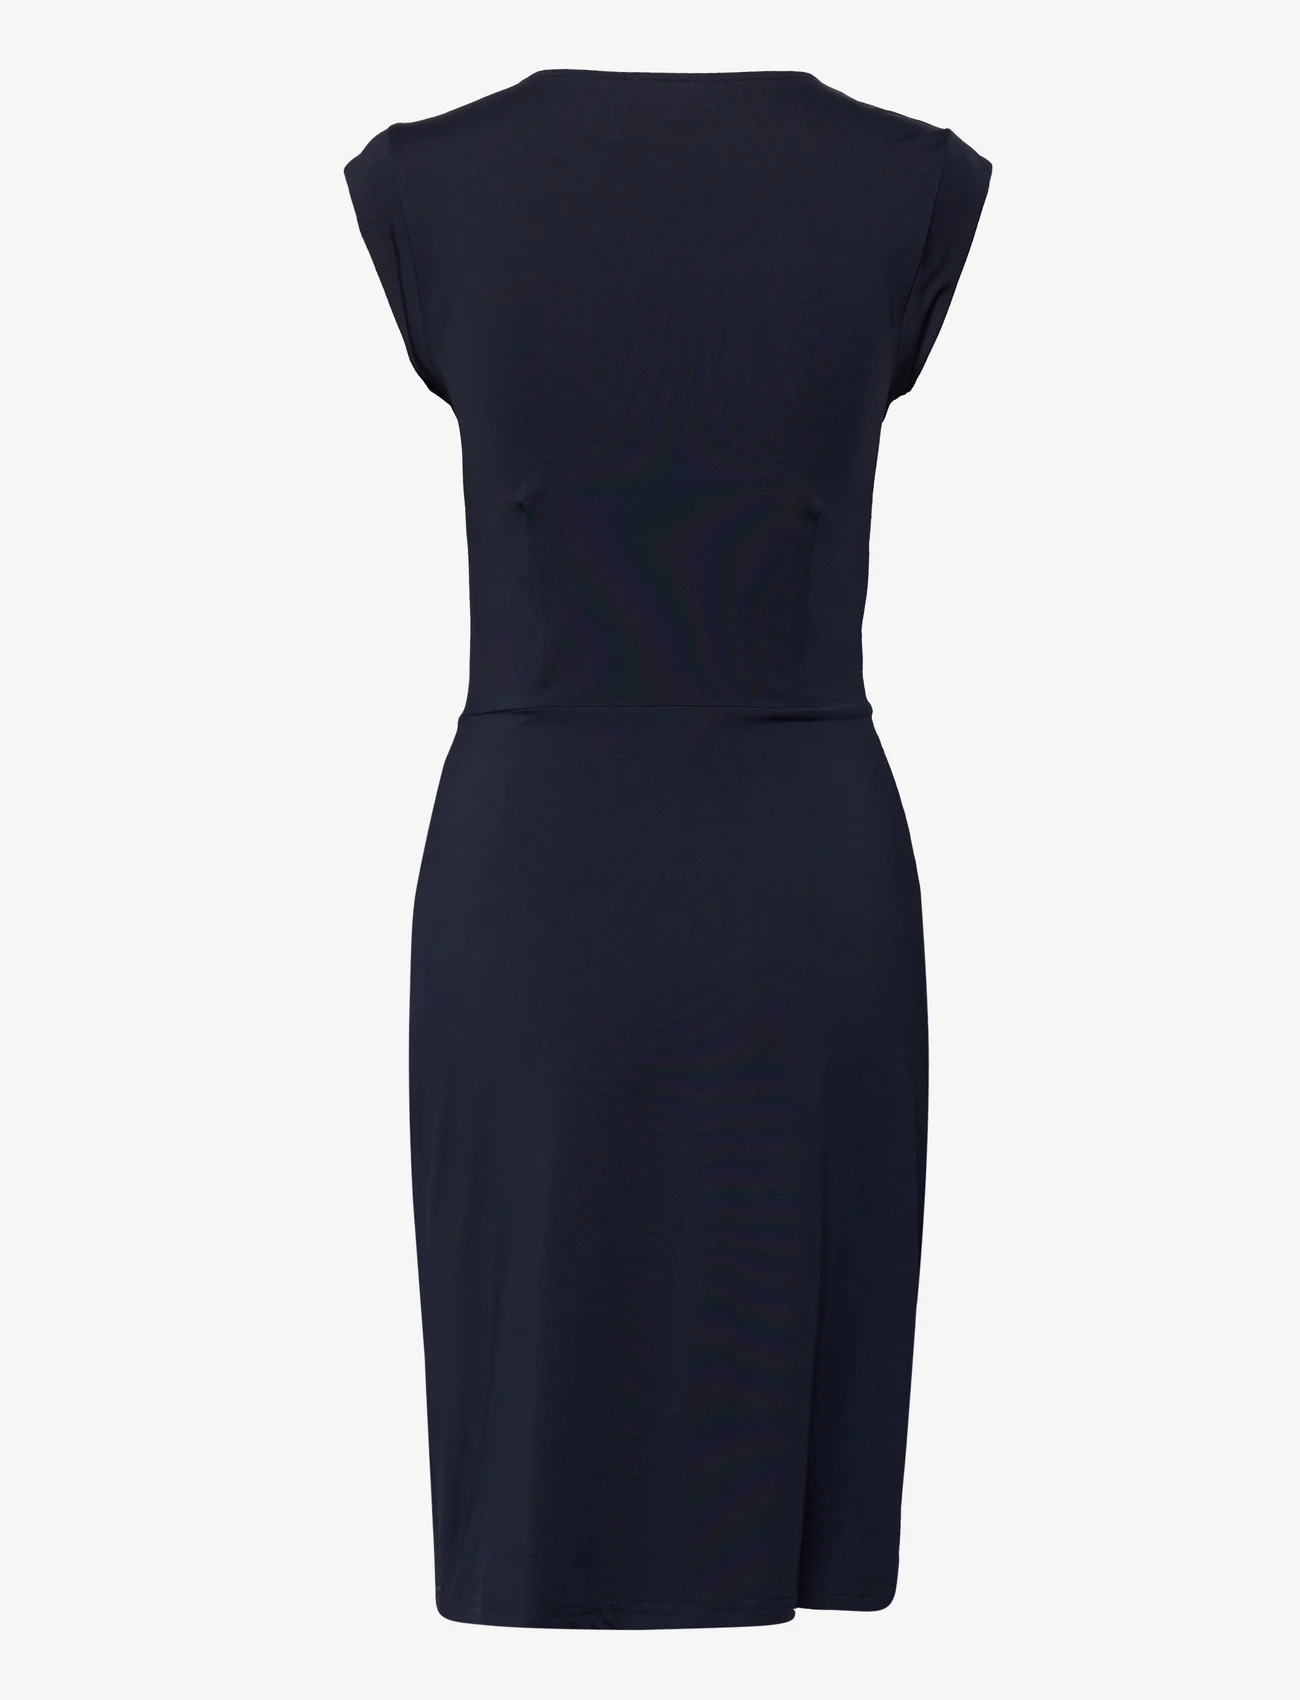 Rosemunde - Dress - ballīšu apģērbs par outlet cenām - dark blue - 1